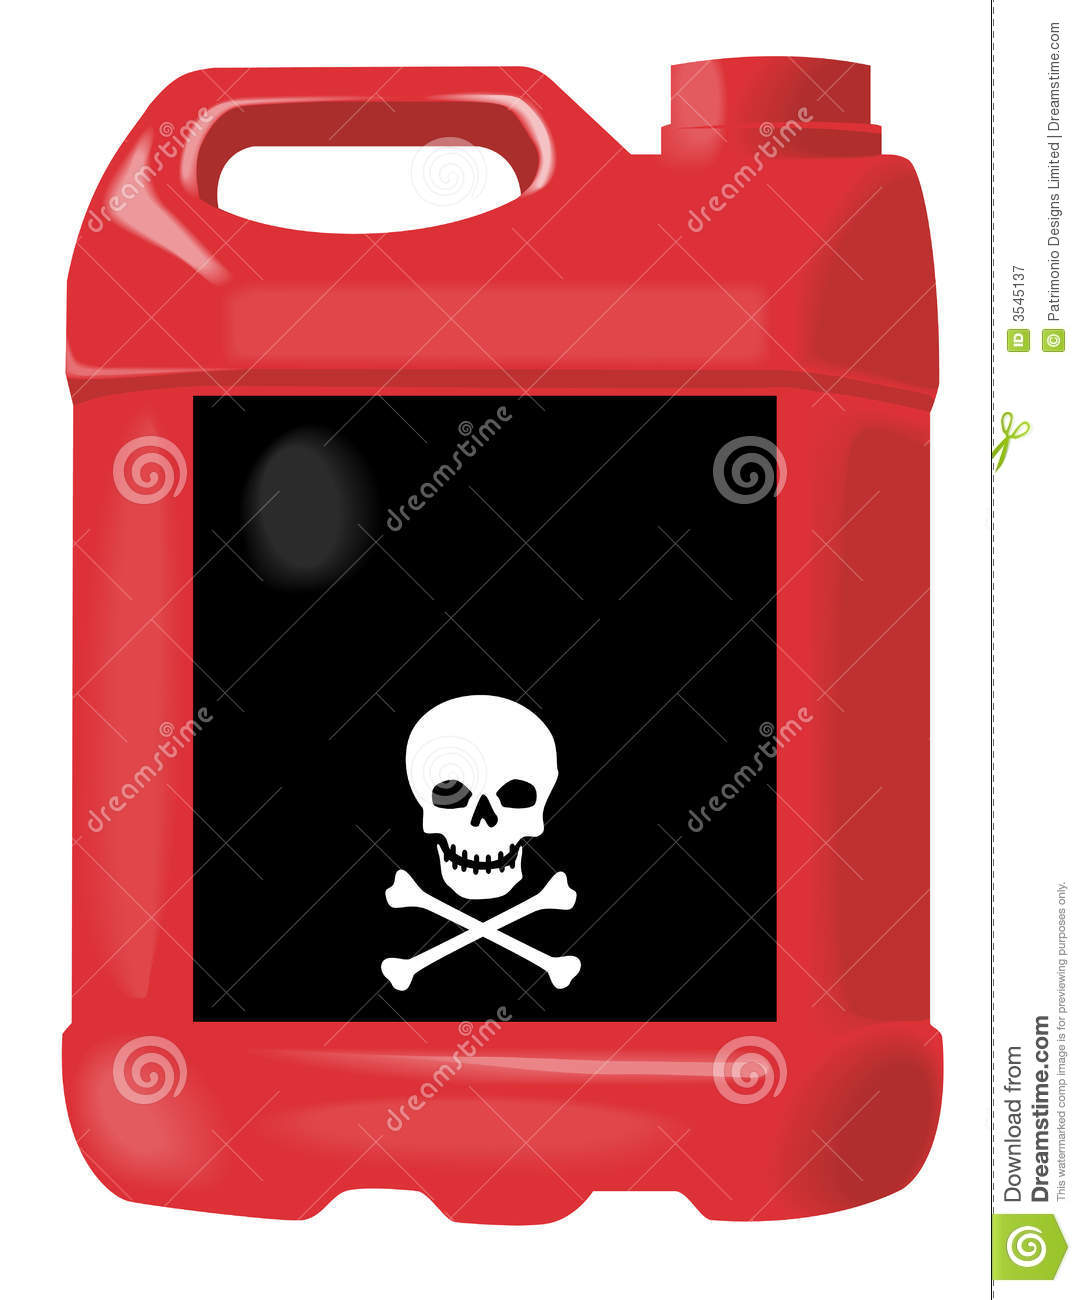 Motor Oil Clipart Red Motor Oil Bottle